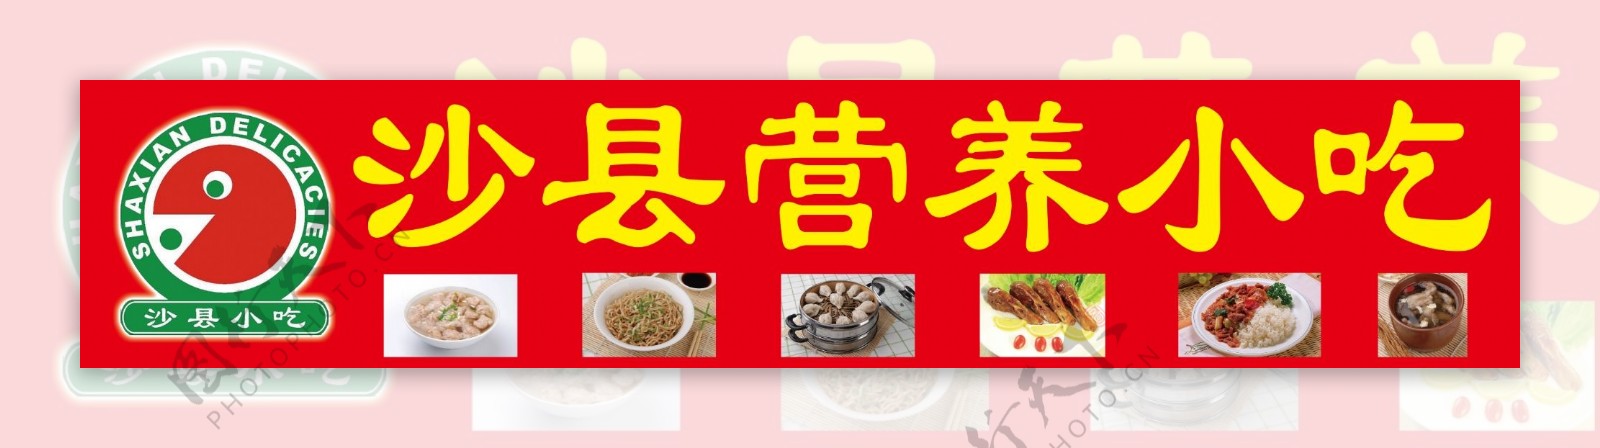 沙县营养小吃门头广告